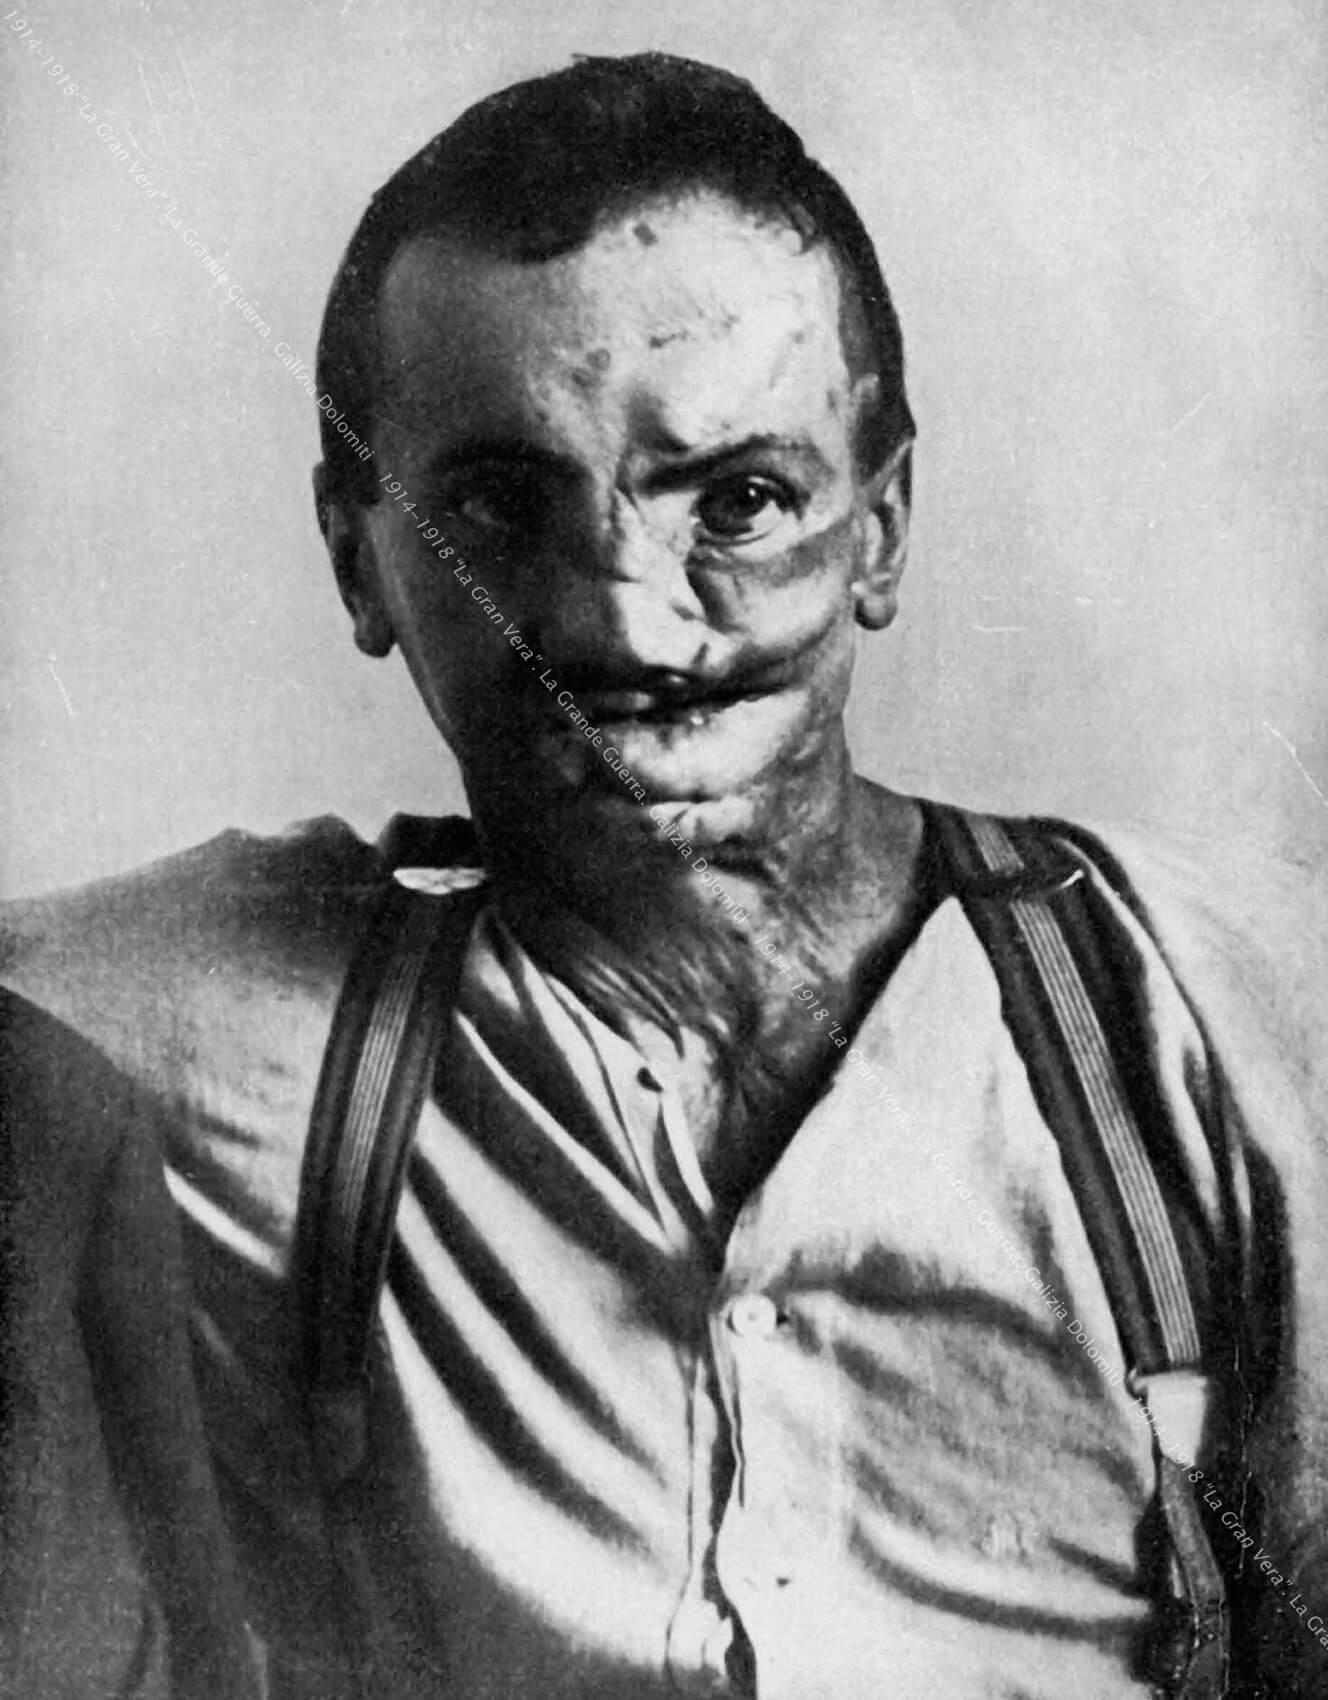 Ein fünfundzwanzigjähriger Landwirt, verwundet 1916 durch Granatsplitter.